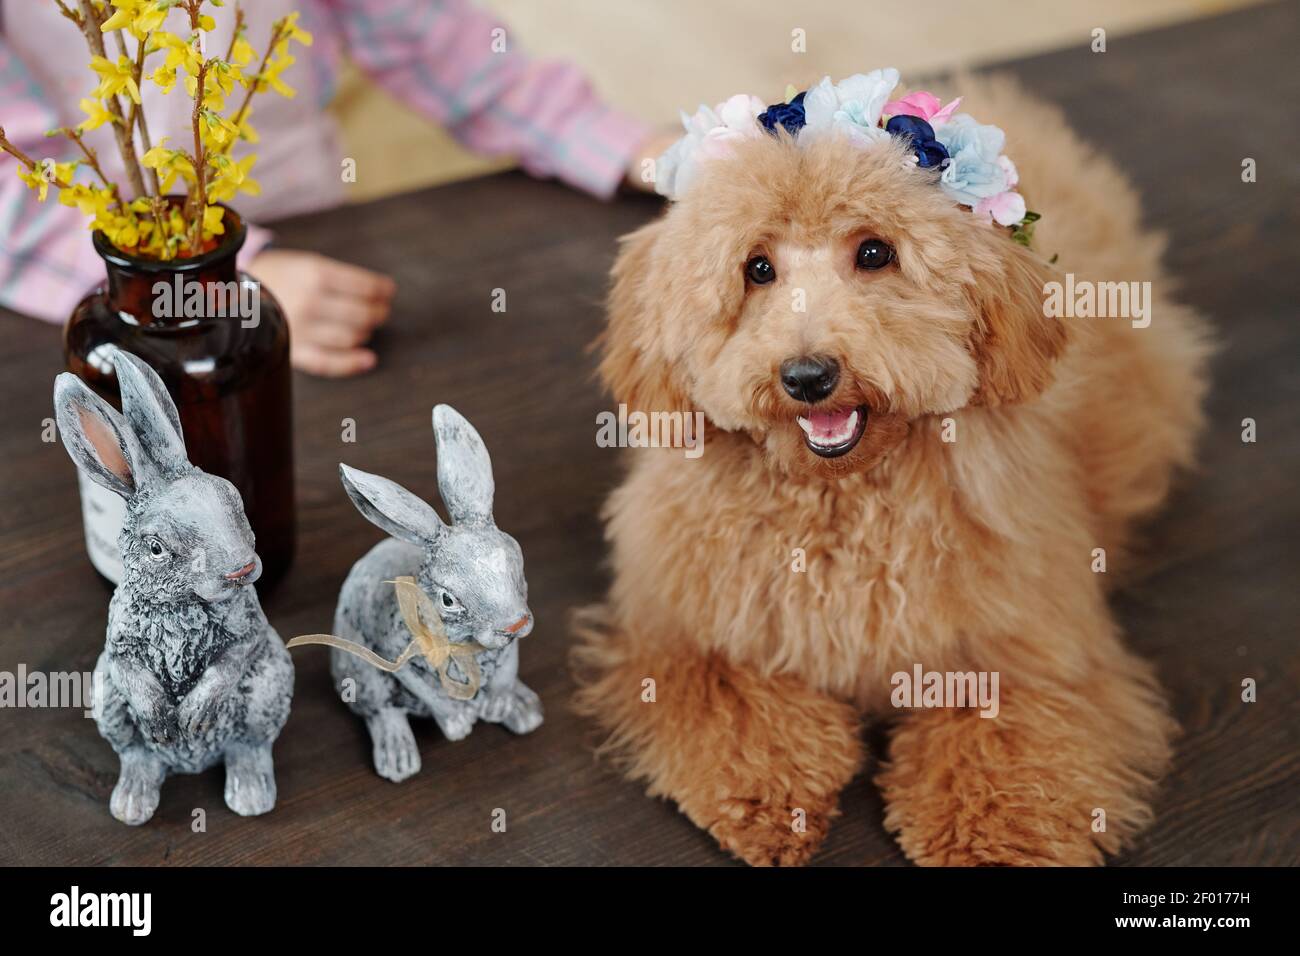 Cute flauschige reinrassige Hund der braunen Farbe sitzt auf Holz Tisch vor der Kamera mit zwei grauen Spielzeugkaninchen Und gelbe Blumen in Vase Stockfoto